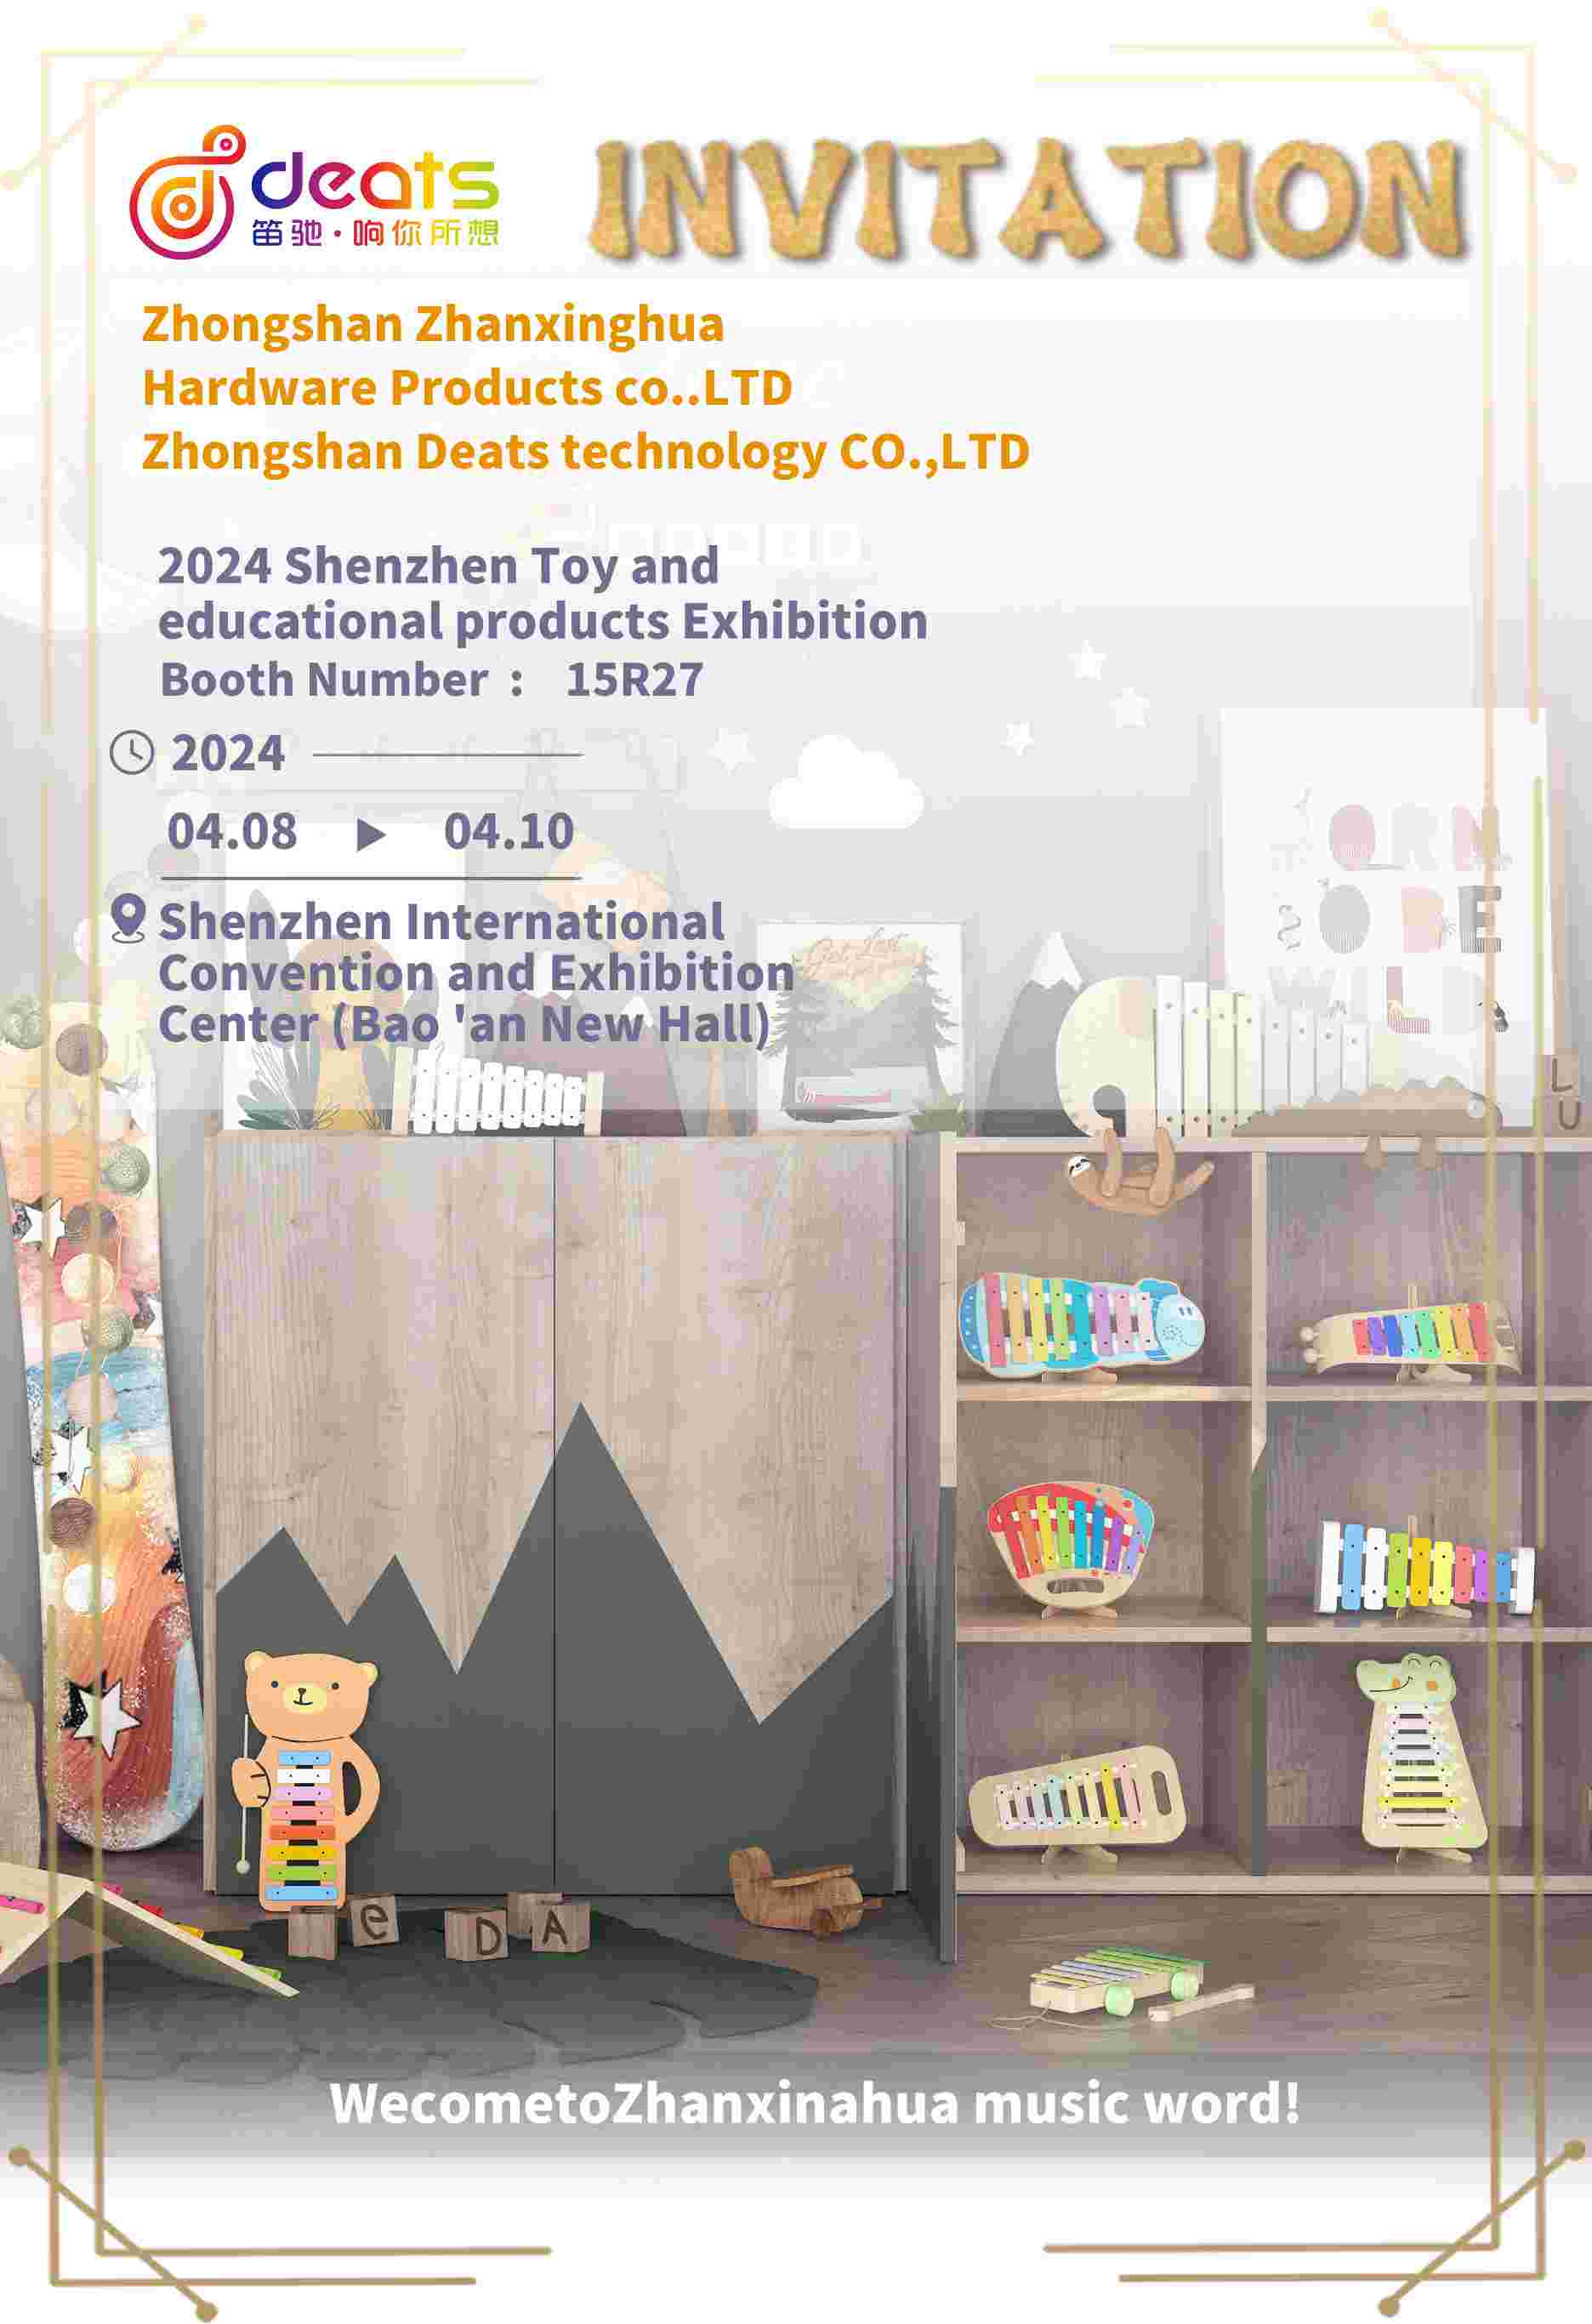 Exposición de juguetes y productos educativos de Shenzhen